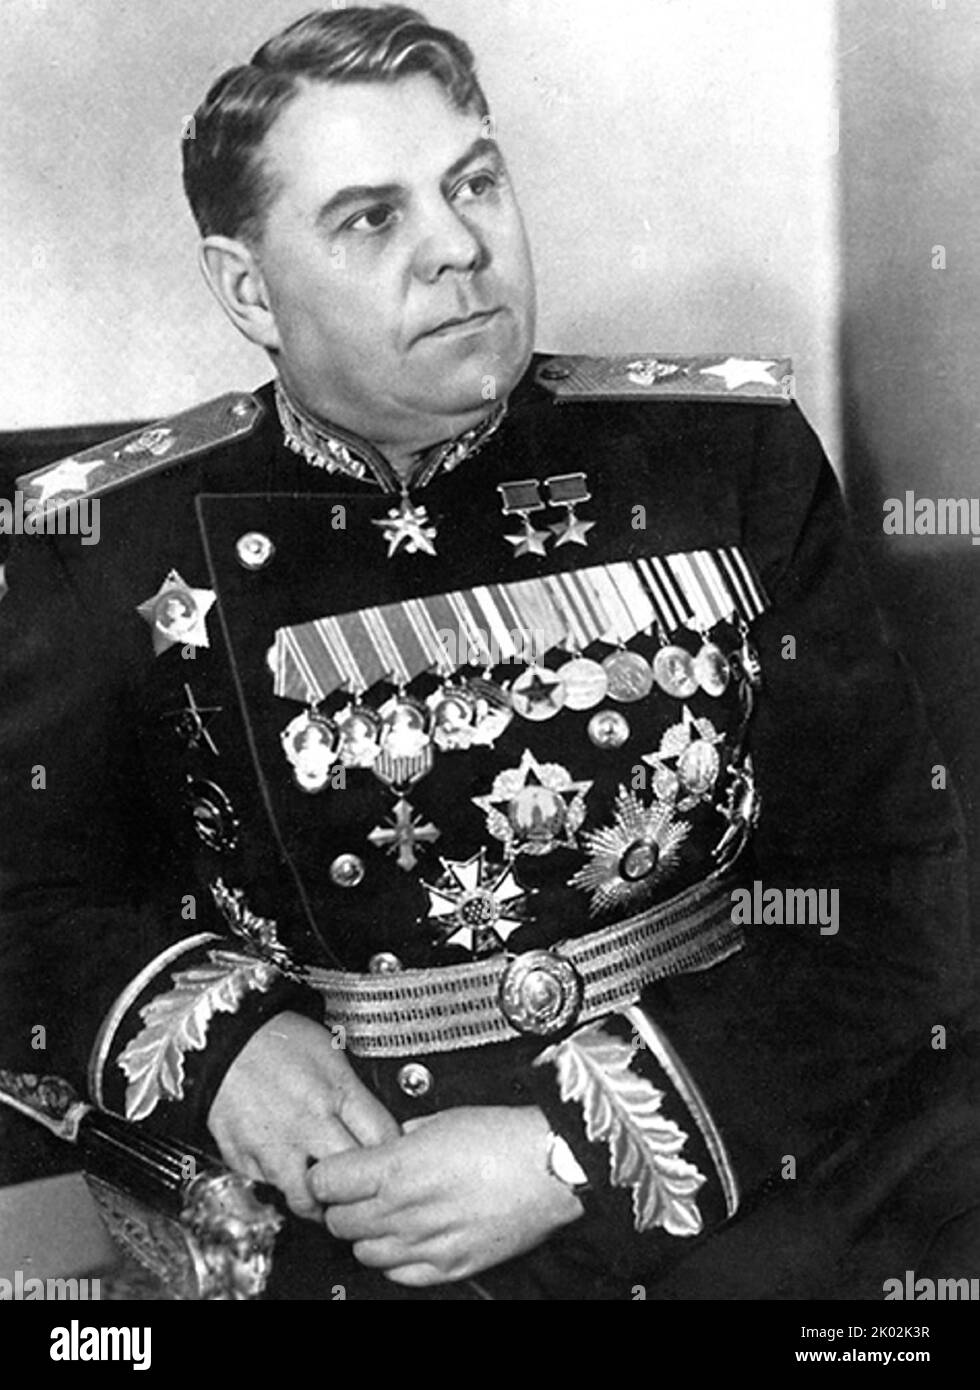 Alexander Michajlowitsch Wassilewskij (1895 - 1977), Marschall der Sowjetunion im Jahre 1943. Er diente als Generalstabschef der sowjetischen Streitkräfte (1942-1945) und stellvertretender Verteidigungsminister während des Zweiten Weltkriegs sowie als Verteidigungsminister von 1949 bis 1953. Stockfoto